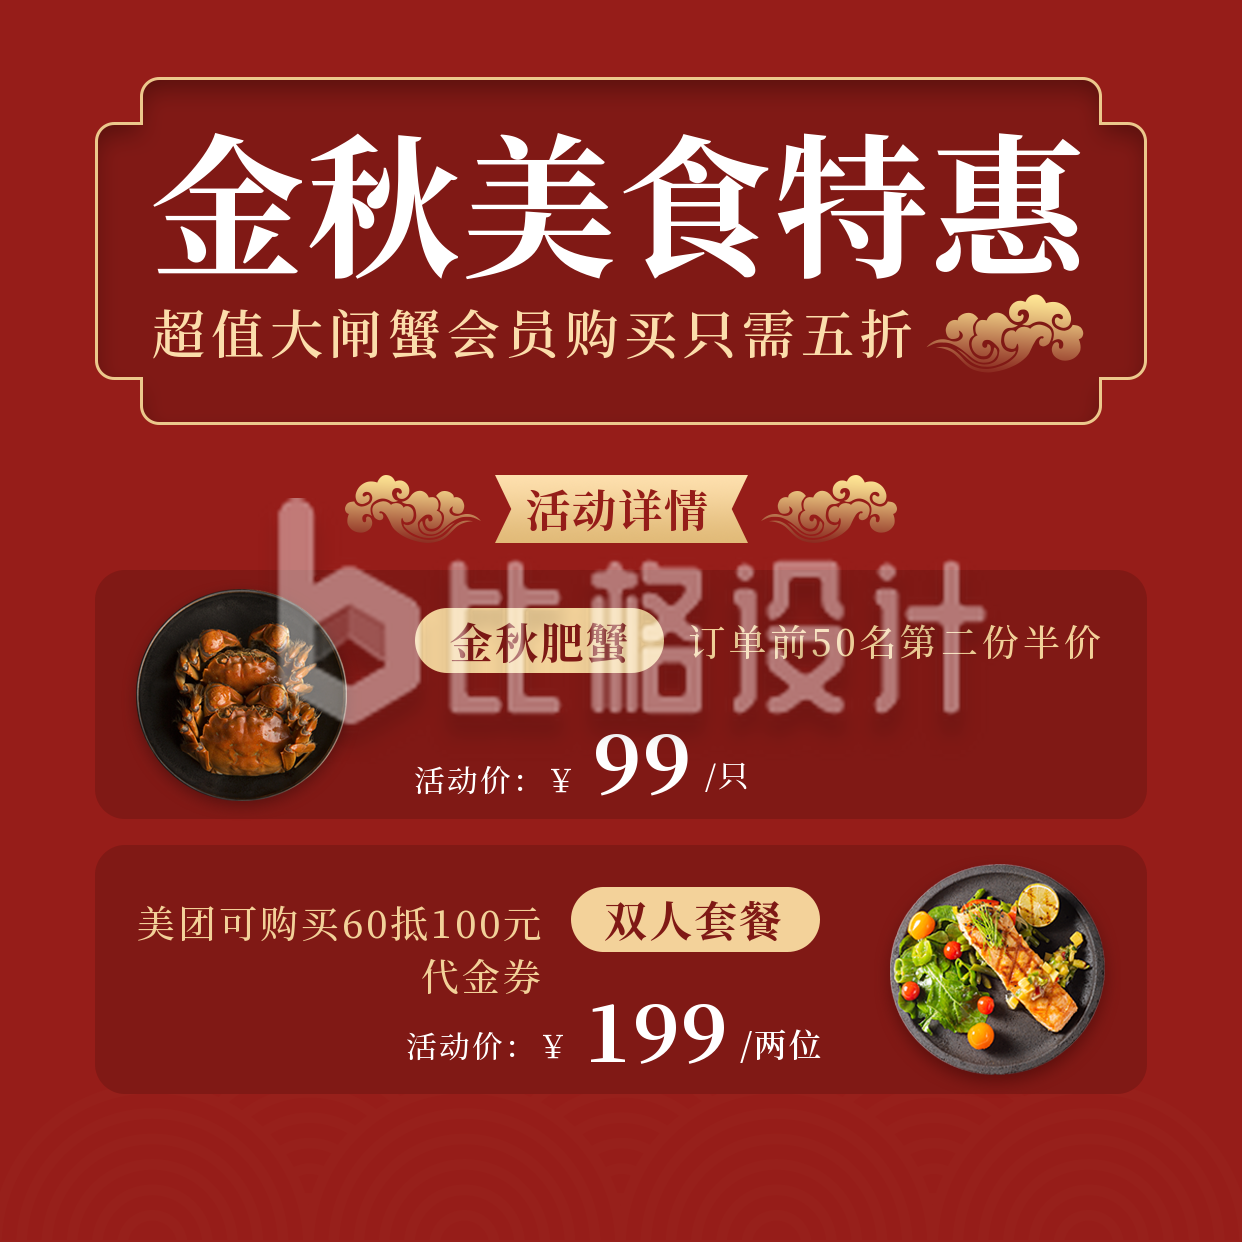 中秋节美食特惠活动宣传实景红色方形海报